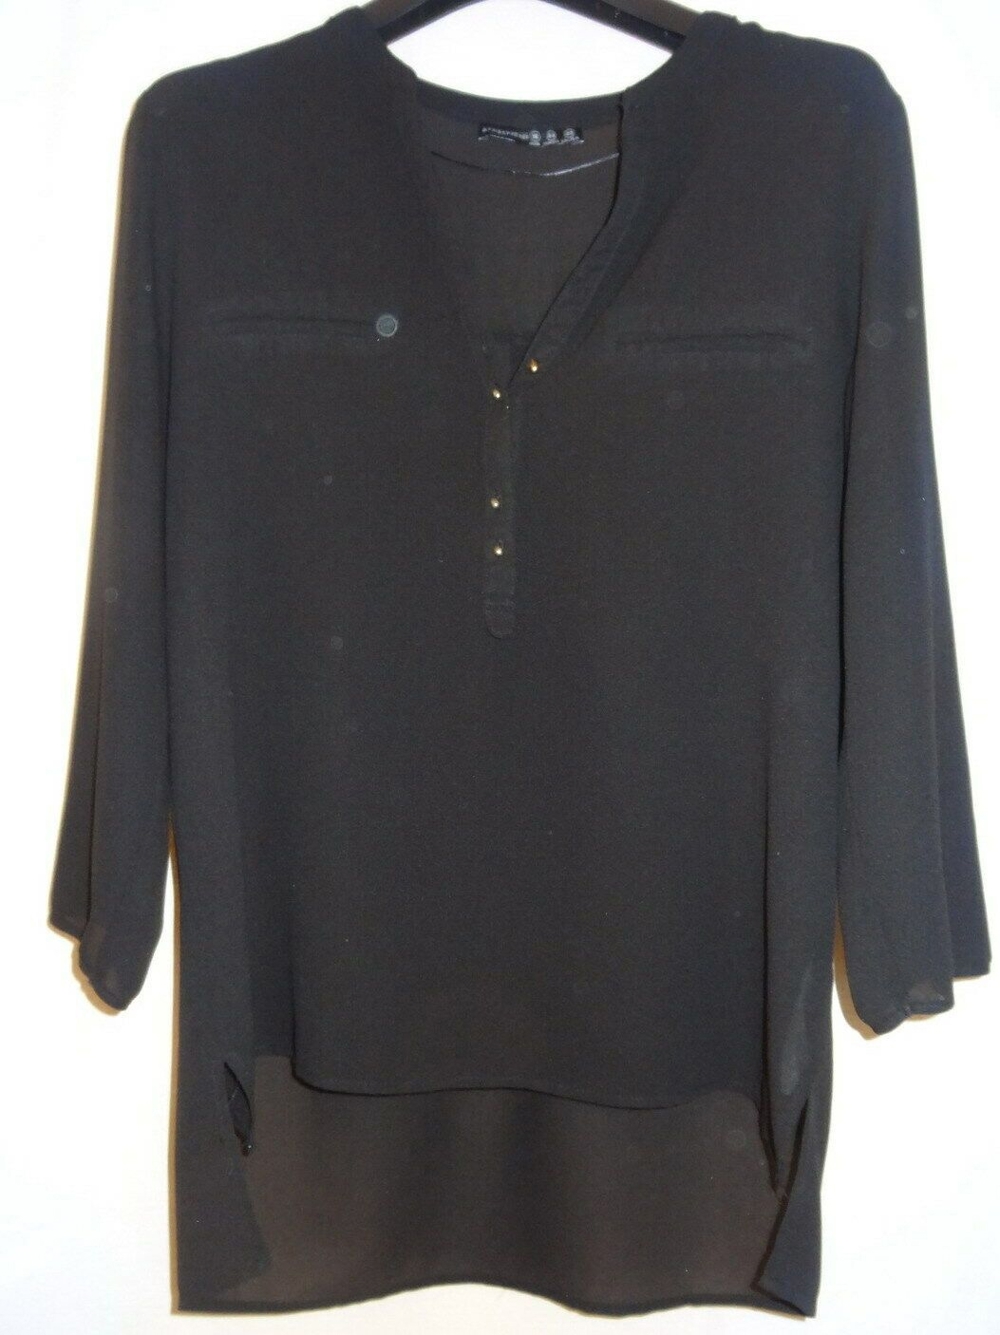 KT Atmospere Bluse GR. 42 Tunika schwarz durchsichtig 100Polyester kaum getragen Damen Kleidung